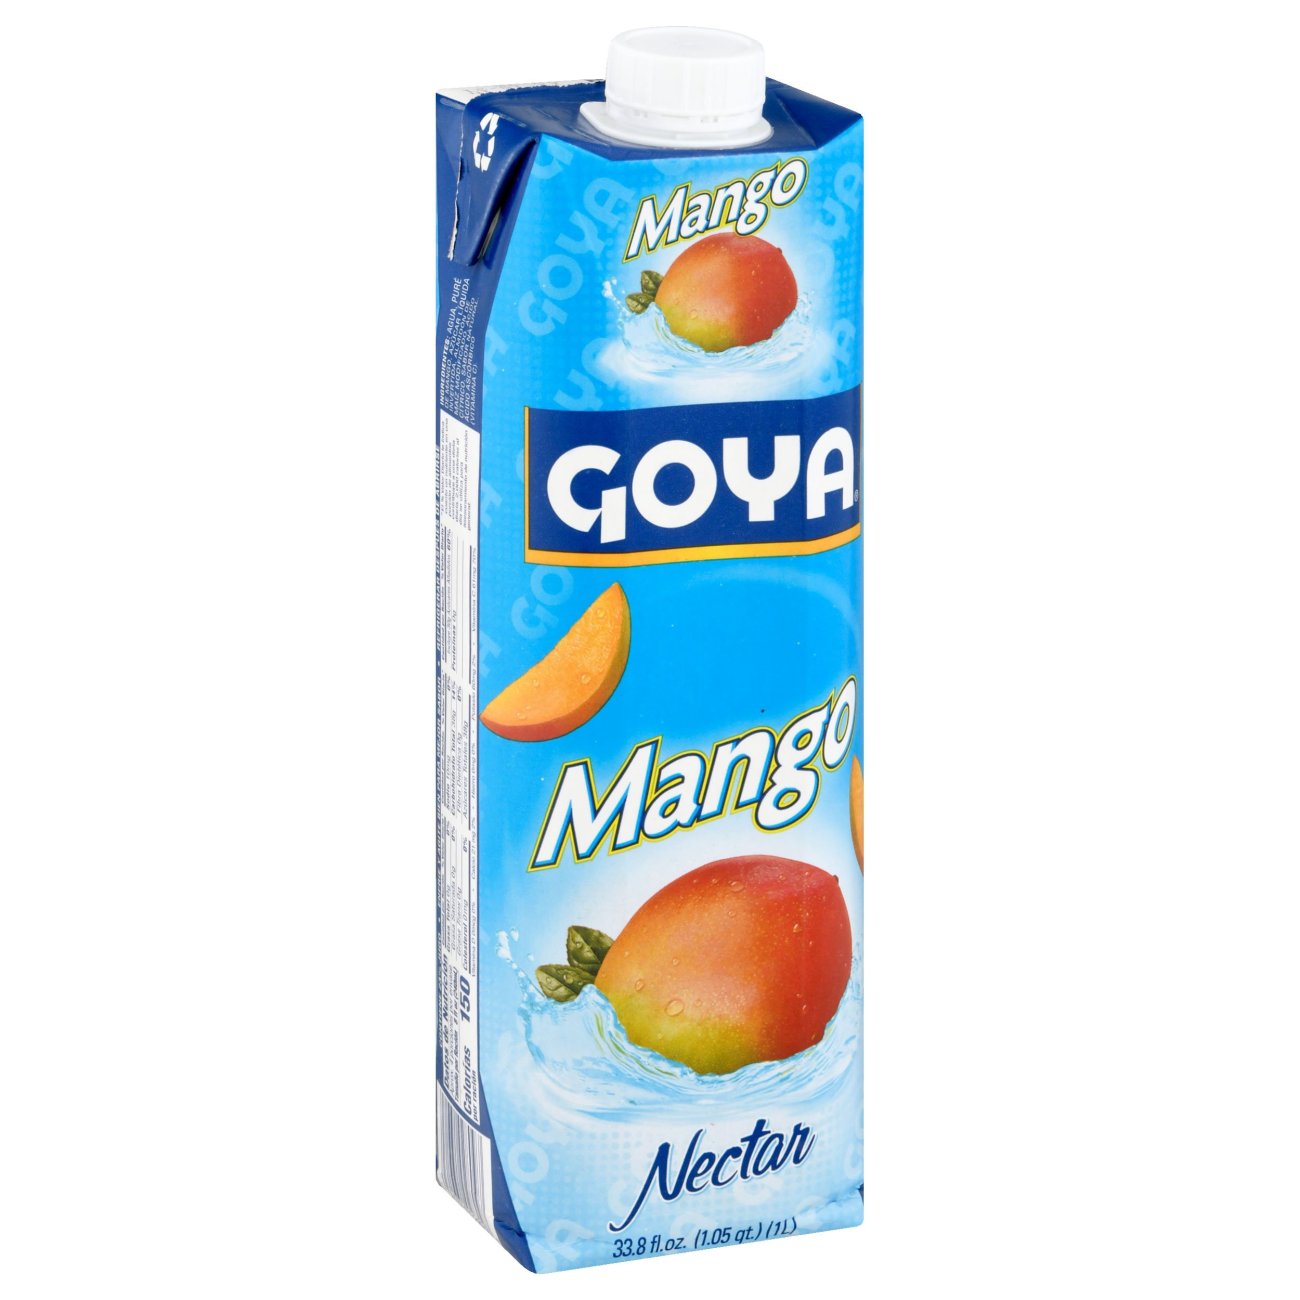 Goya nectars